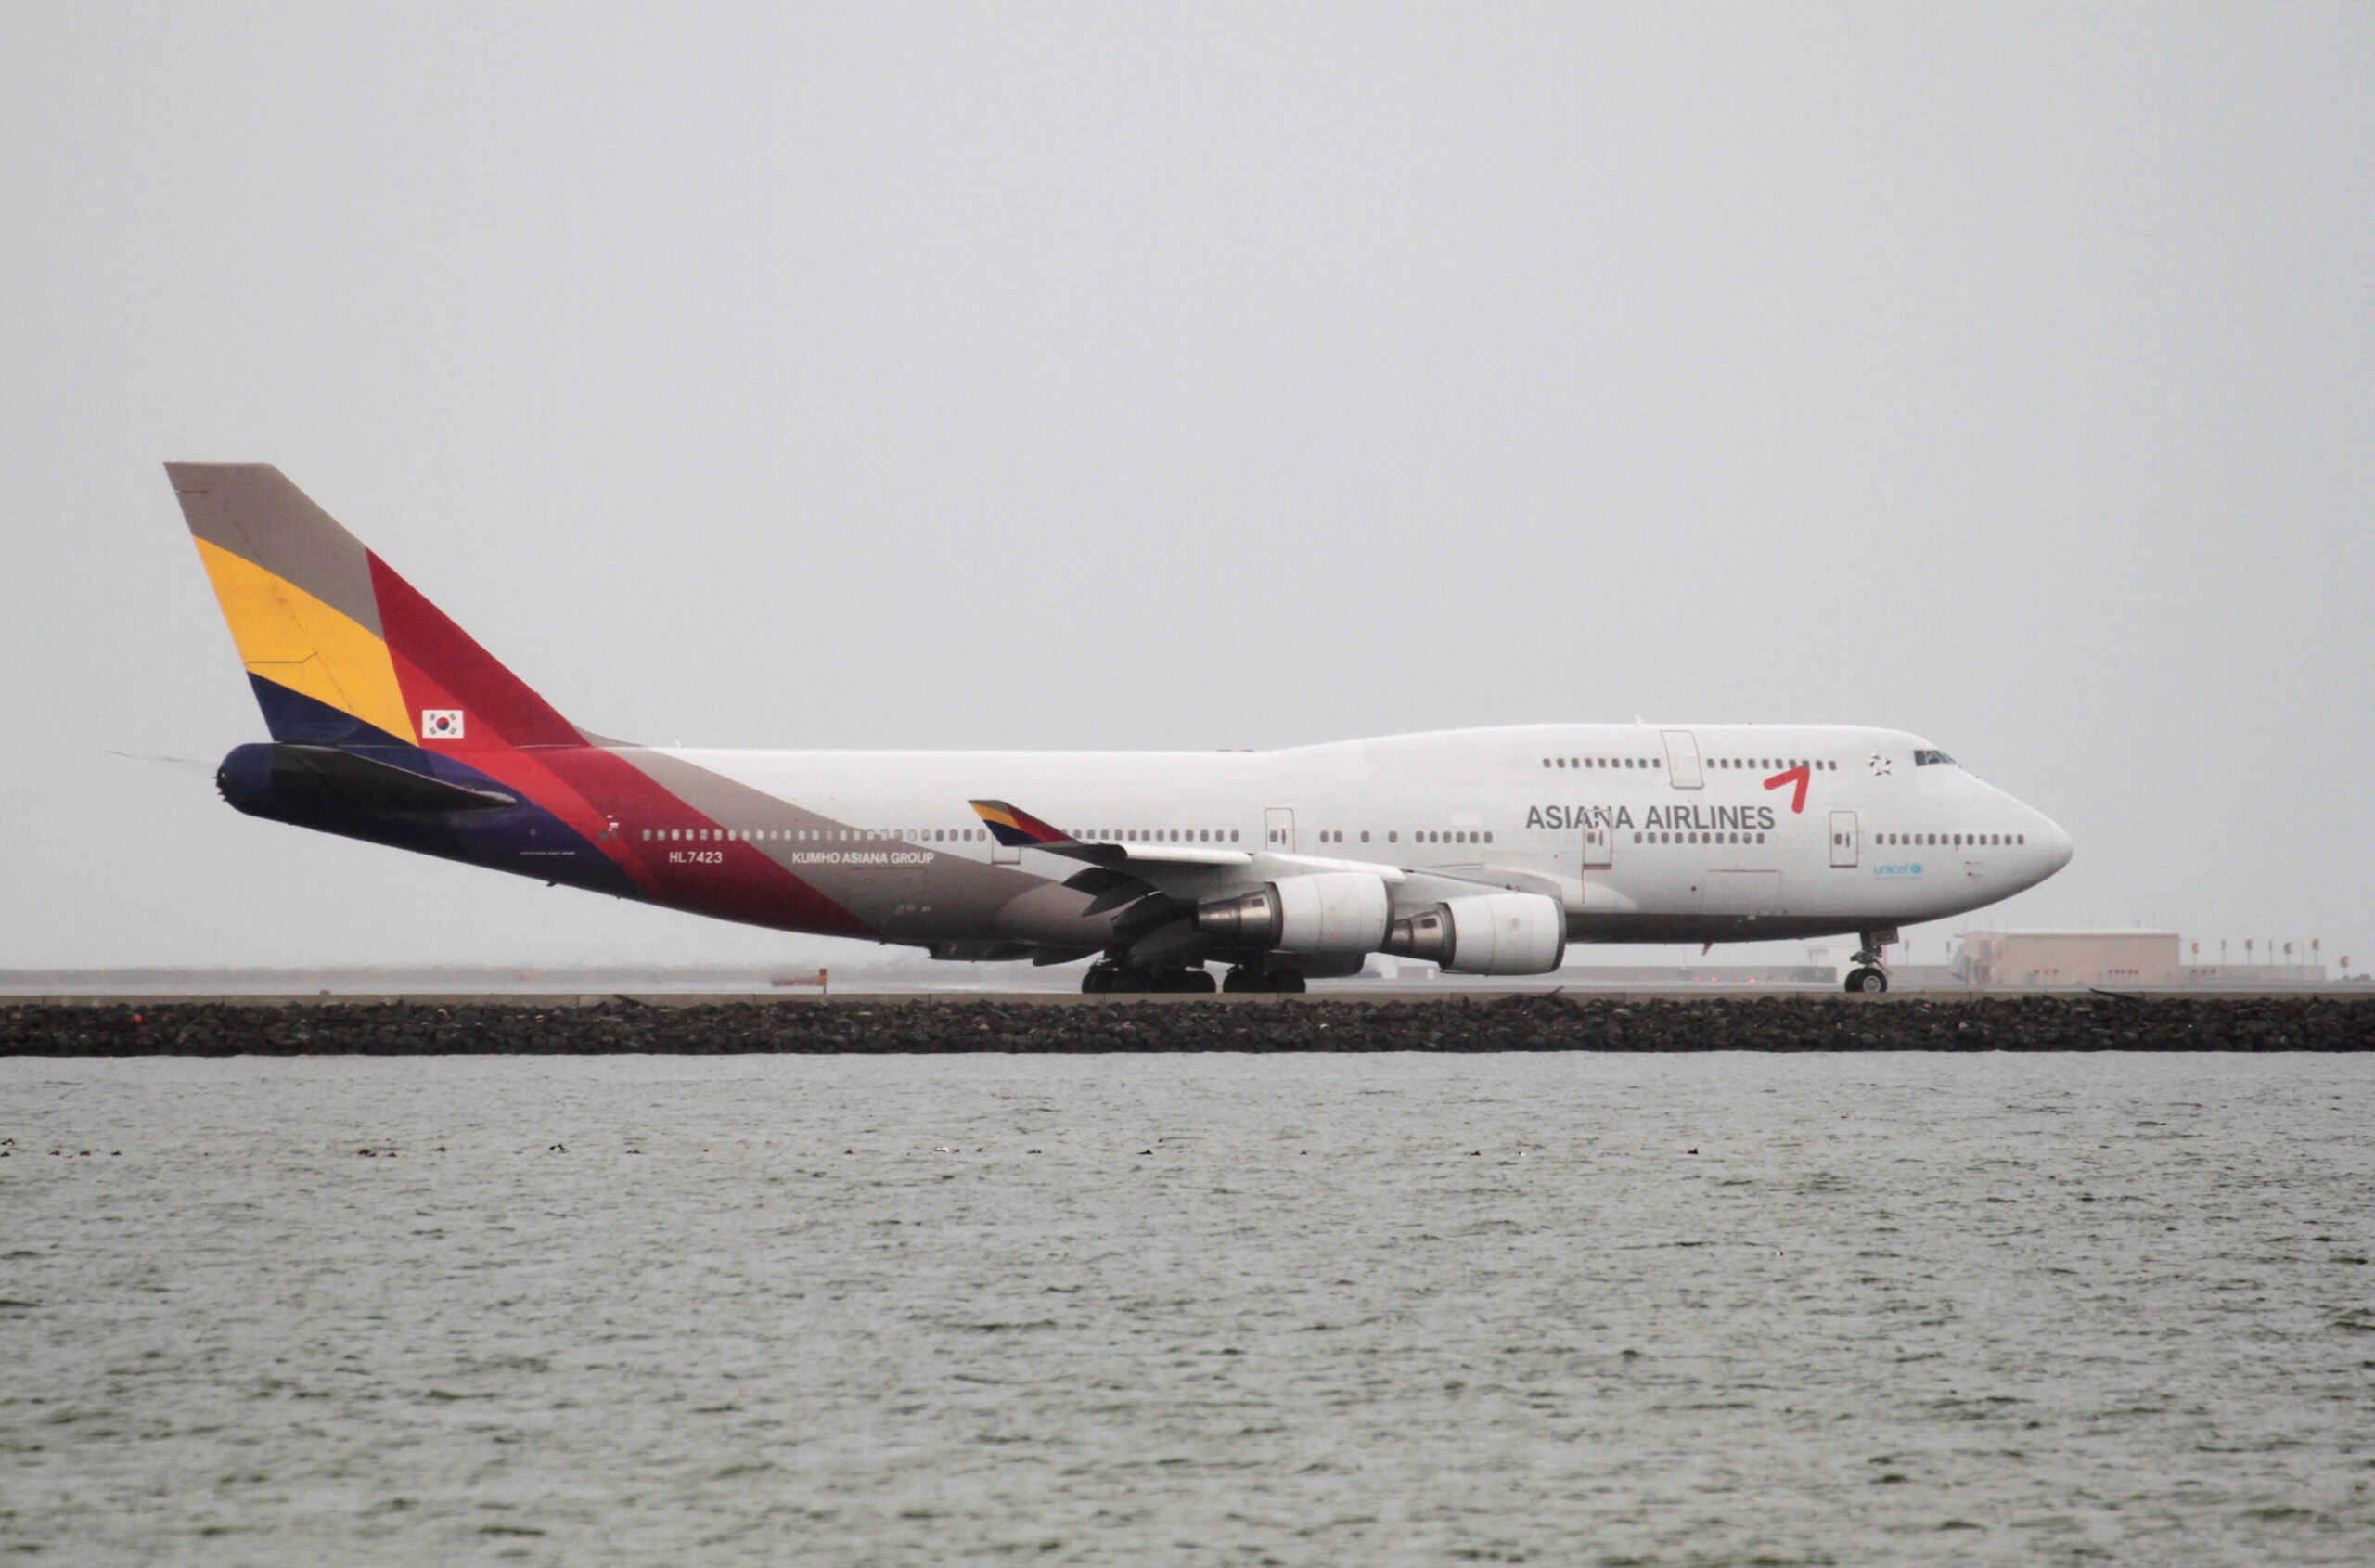 Νότια Κορέα: Τρόμος στον αέρα σε αεροπλάνο της Asiana Airlines, όταν άνοιξε πόρτα – Βίντεο